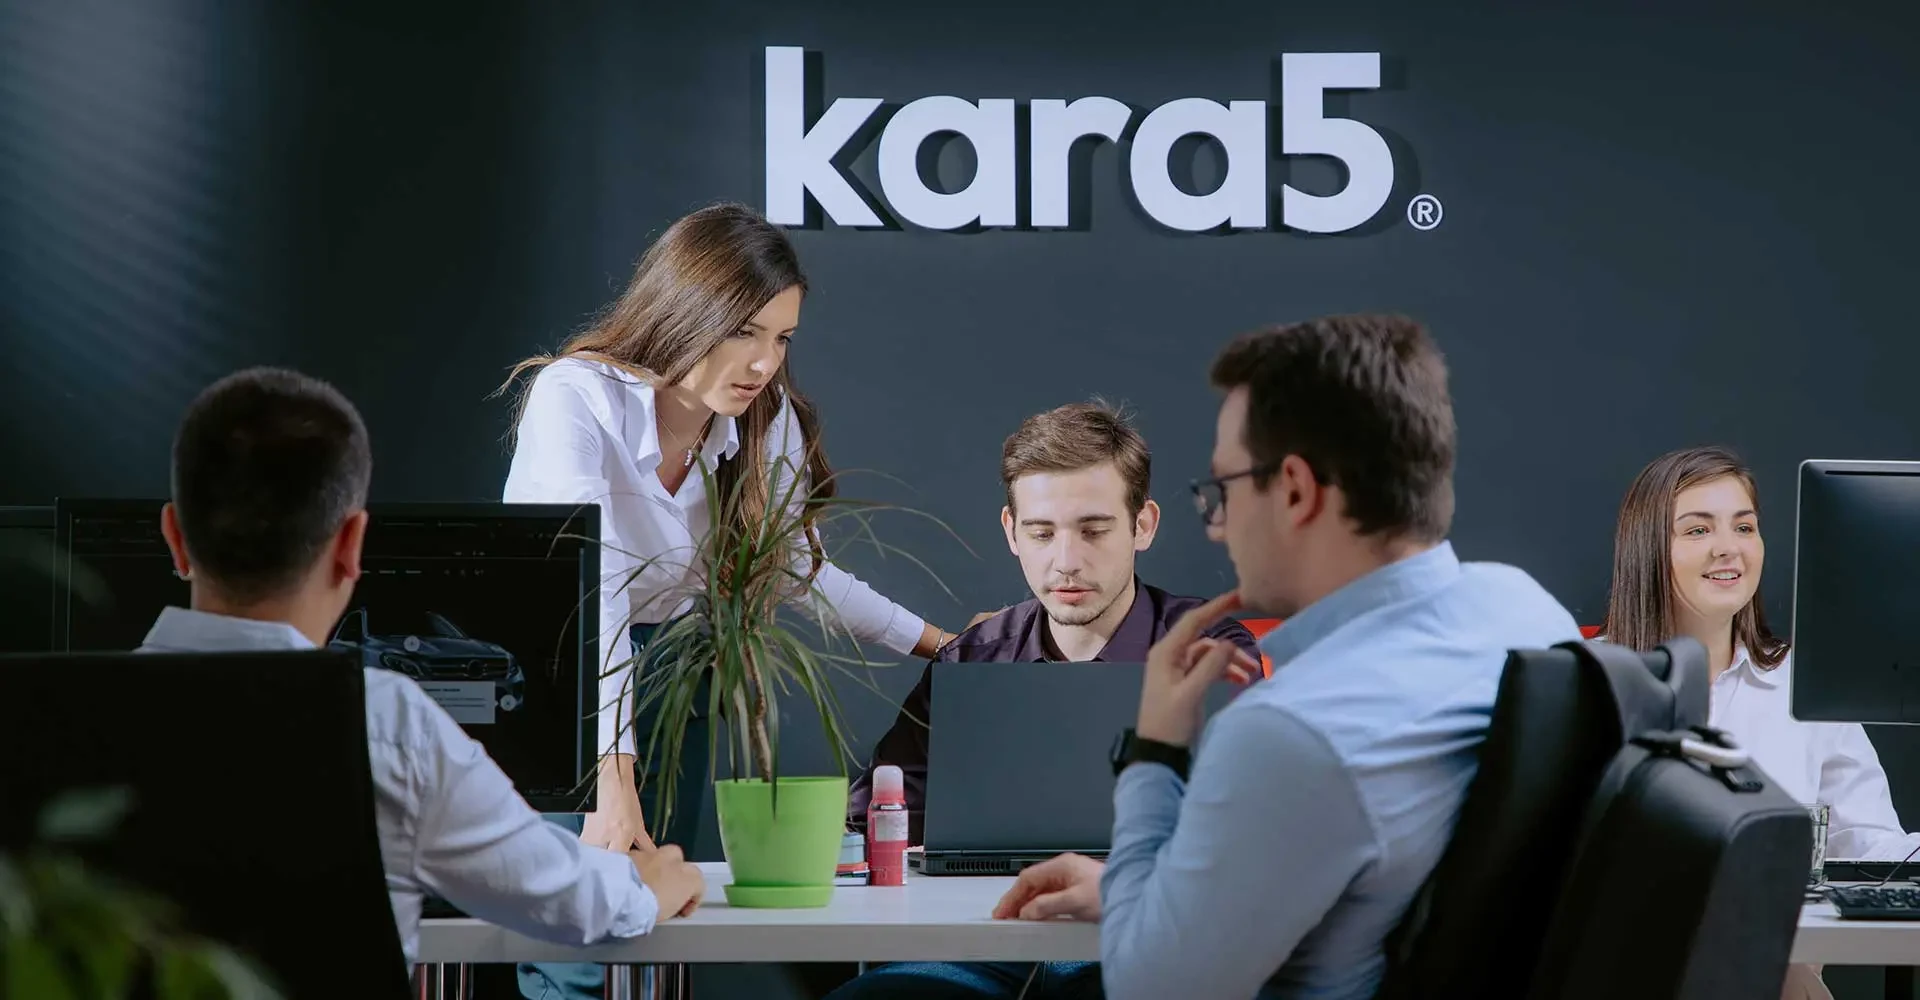 Kara5 - Digital Marketing